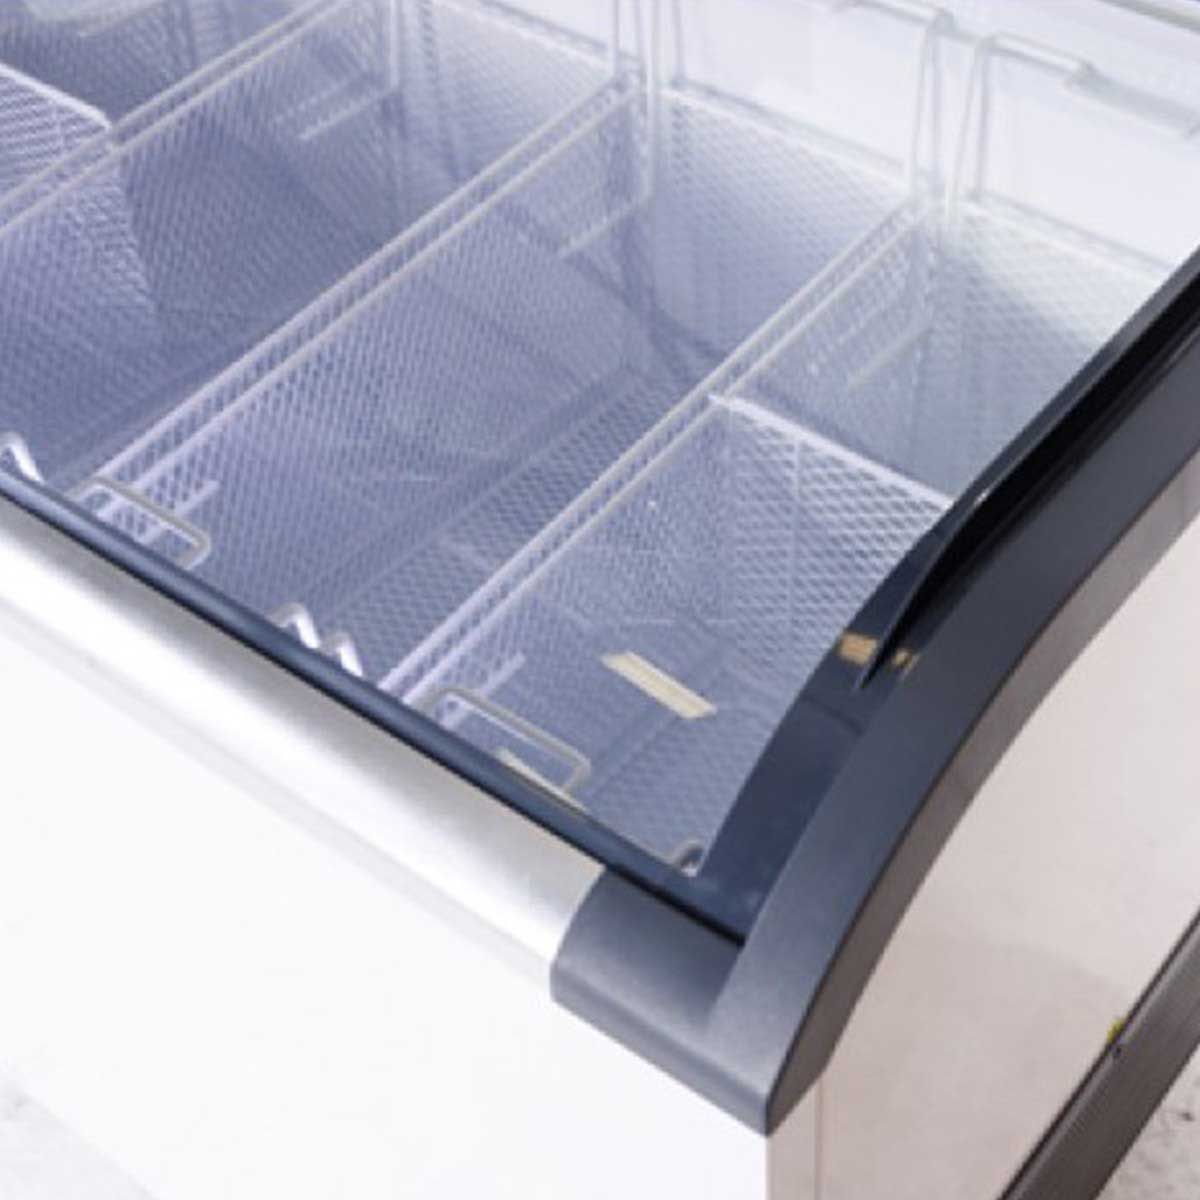 FRESHER ตู้แช่ไอศกรีมฝากระจกโค้ง รุ่น FCG-651V ขนาด 20.3 Q.